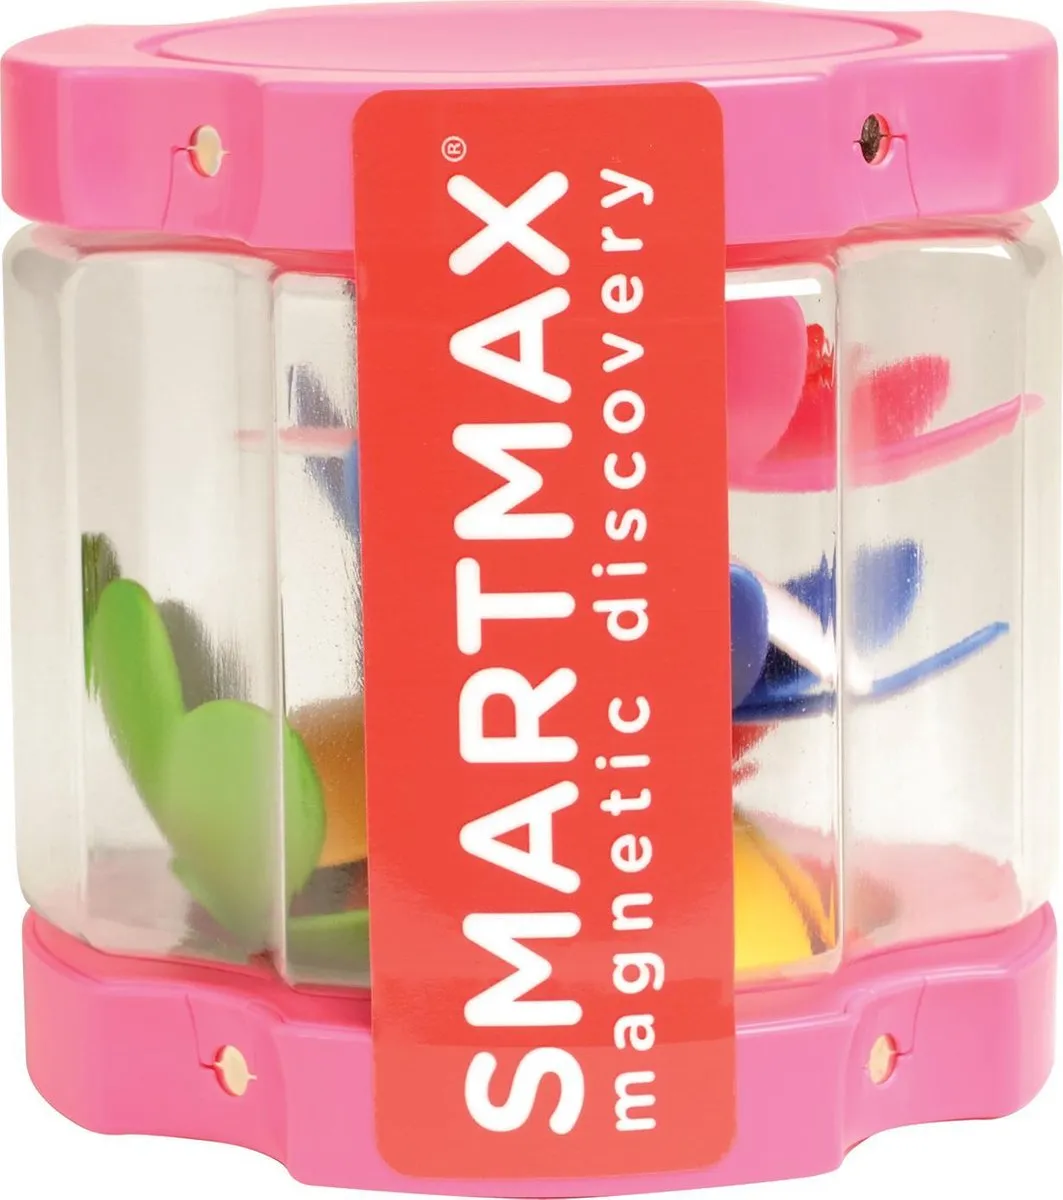 SmartMax Uitbreidingsset diverse bloemen in container met magneetpunten speelgoed